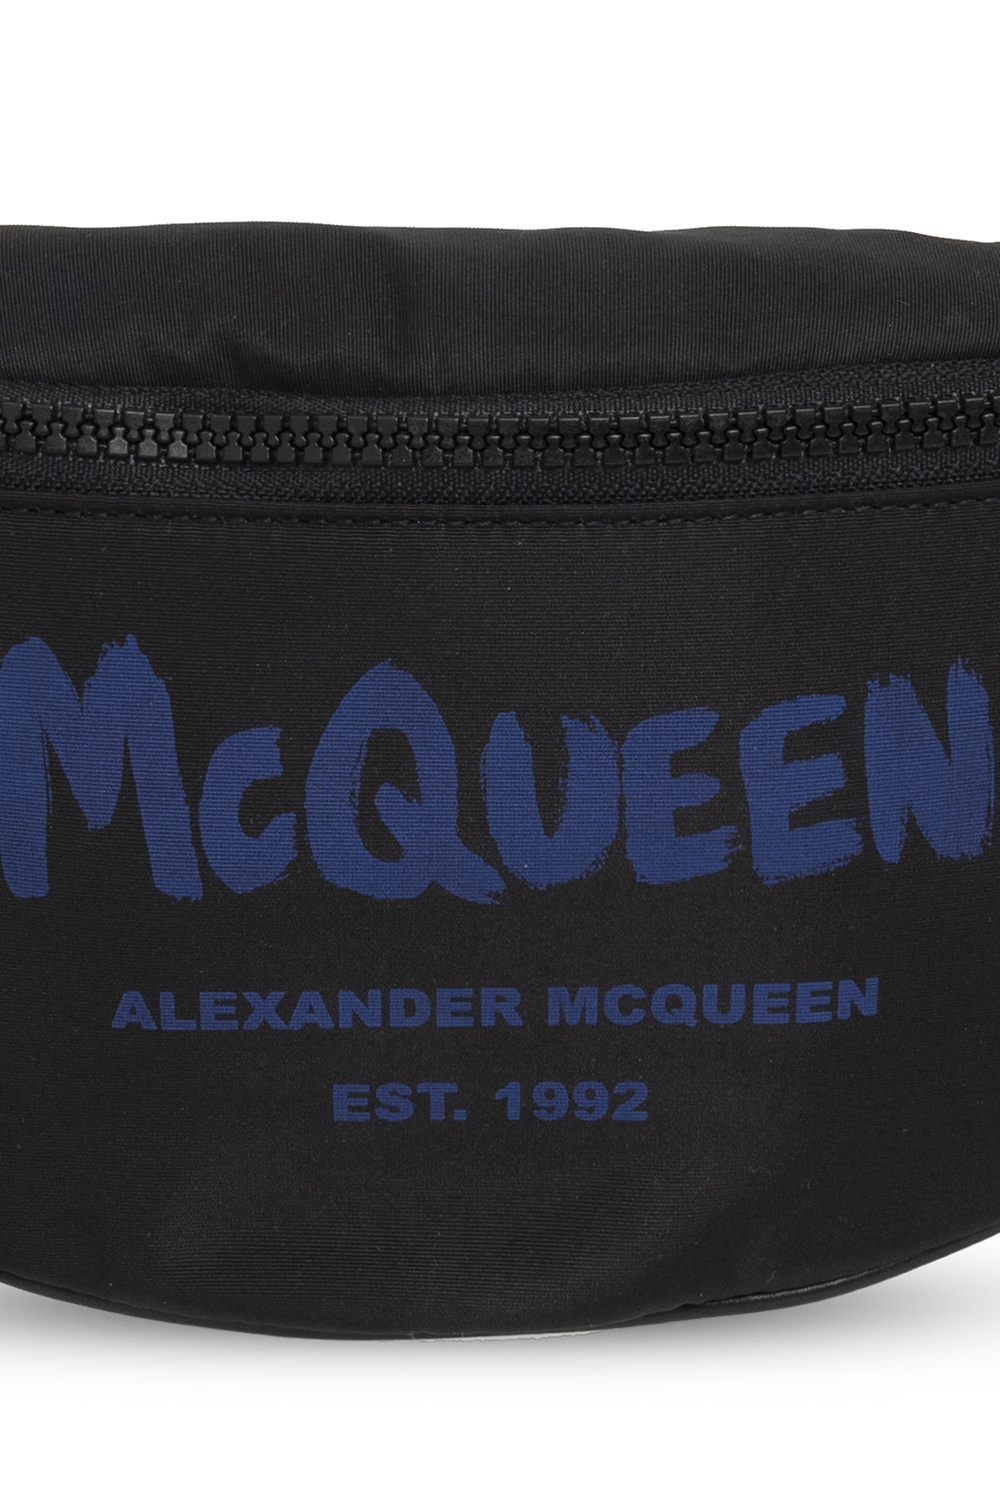 Alexander McQueen Subscribe to ALEXANDER MCQUEEN